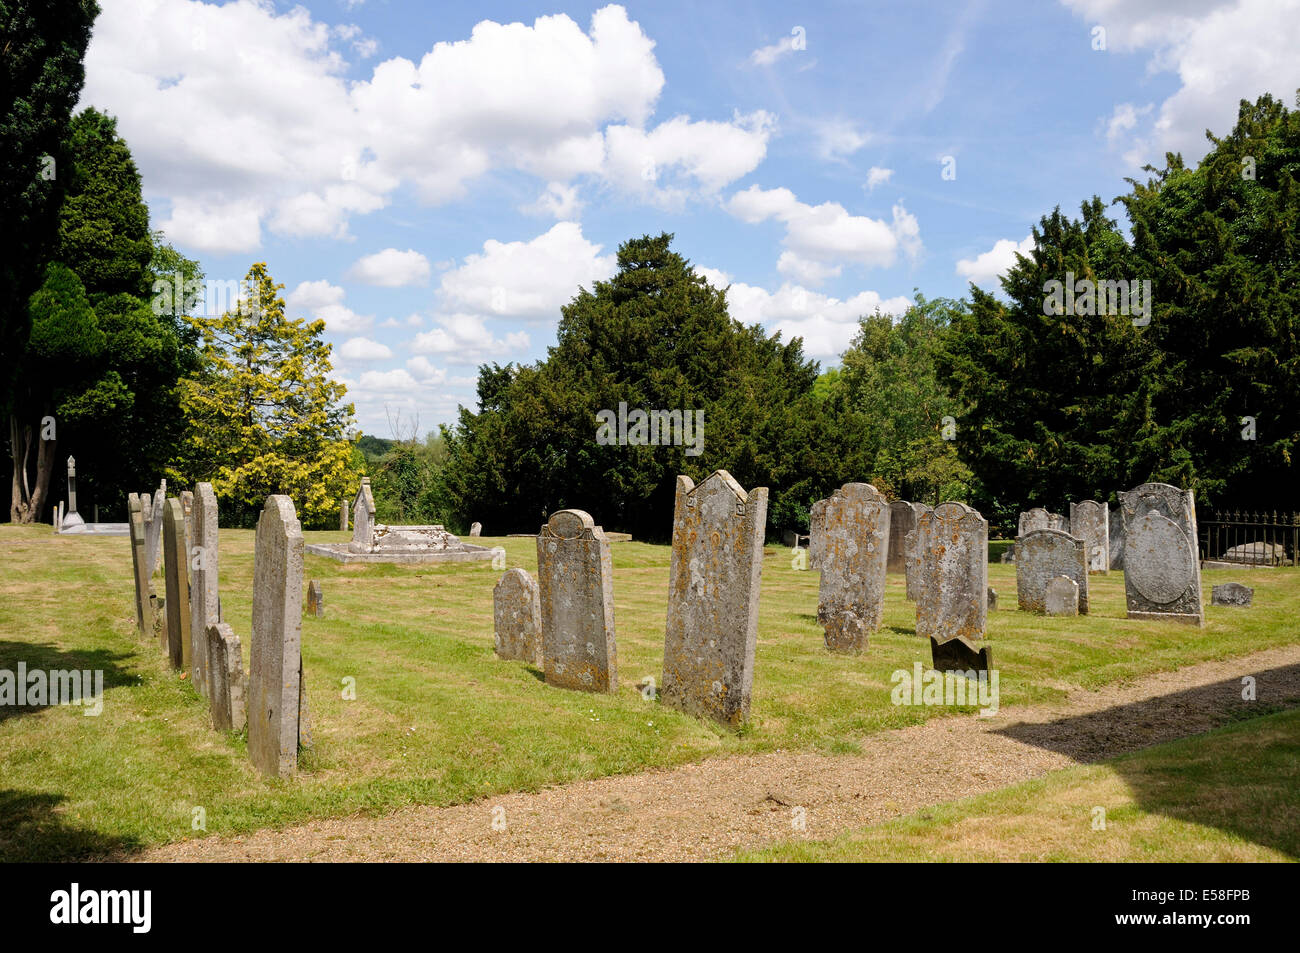 Grabsteine in Land Friedhof, Str. Marys Kirche Bayford Dorf Hertfordshire England Großbritannien UK Stockfoto